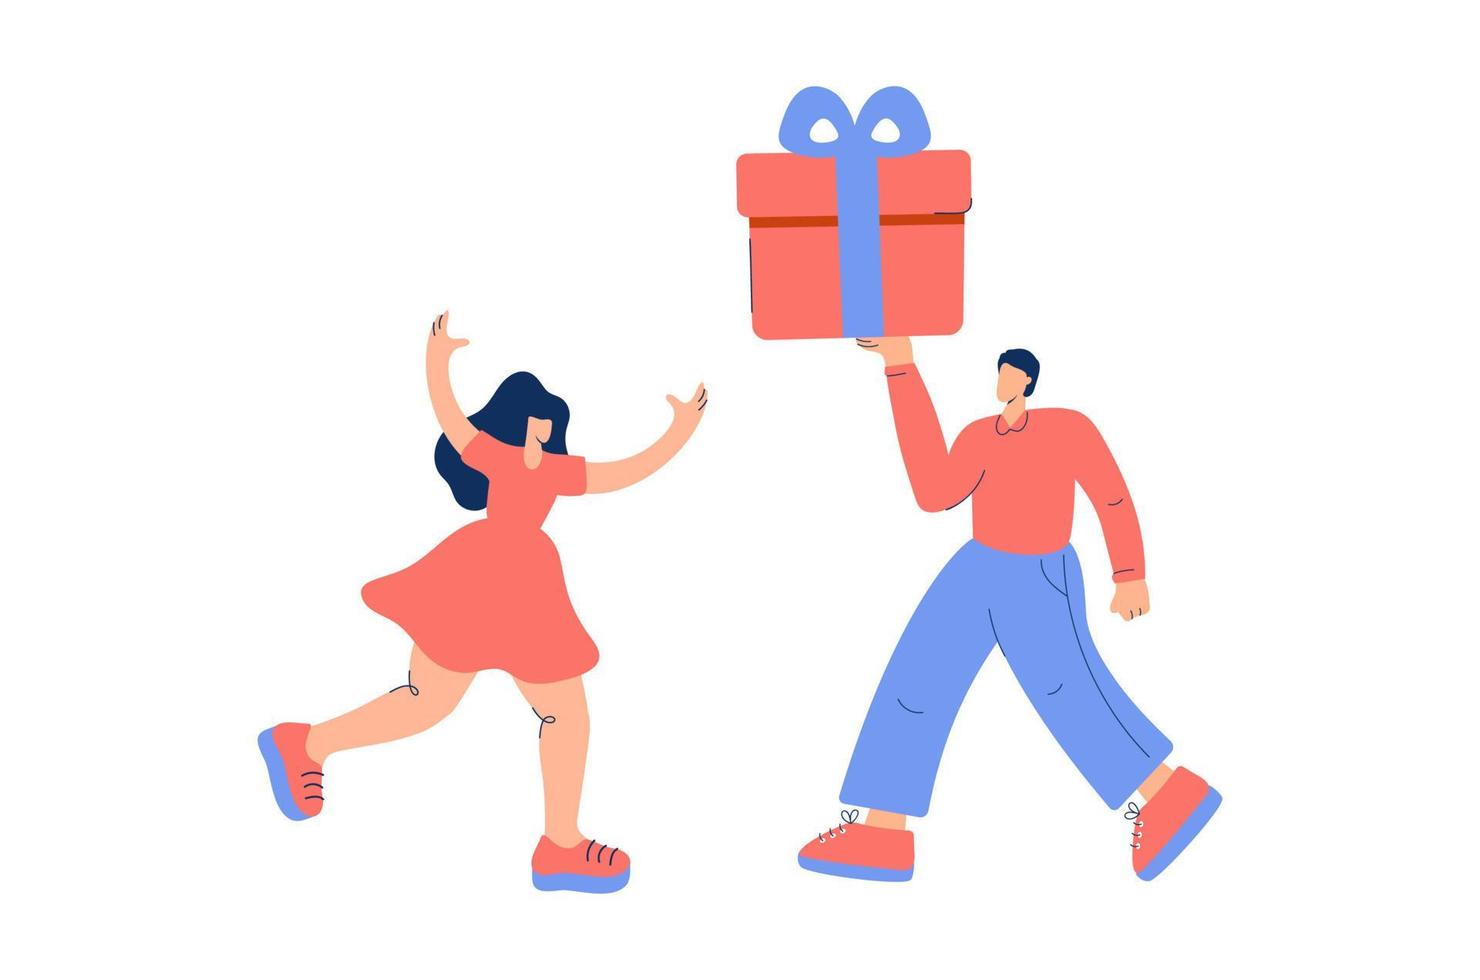 jonge man die een cadeau geeft aan zijn vriendin of vriend. verliefd stel. concept voor verjaardag, Valentijnsdag of feestdagen. platte vectorillustratie op witte achtergrond vector